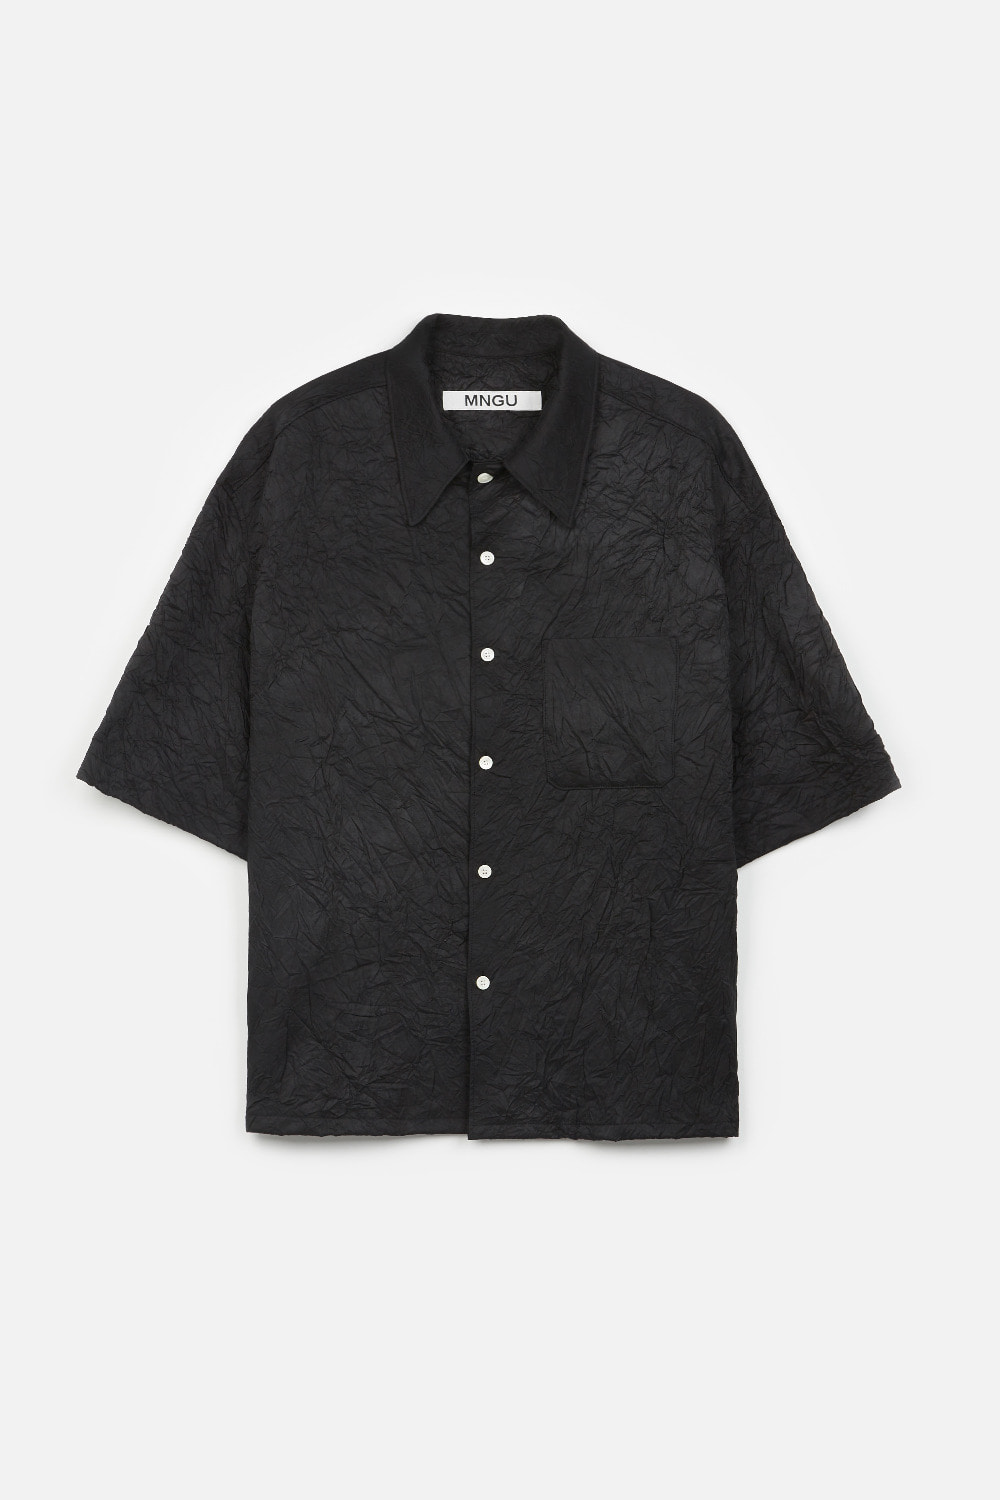 [-10%] 크링클 미드-슬리브 셔츠 IN 블랙